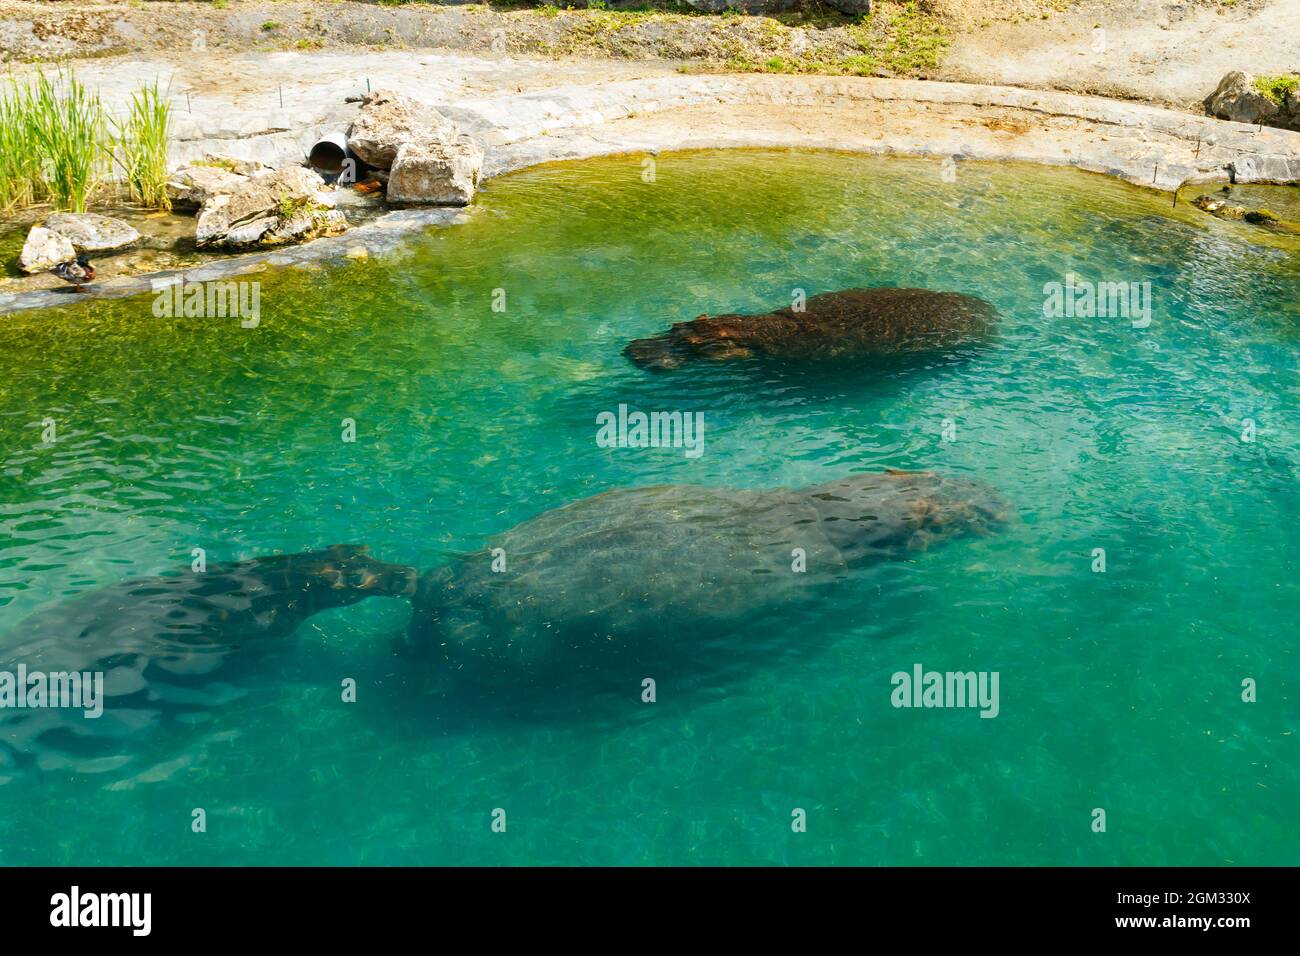 La famille des hippopotames nagent dans l'étang Banque D'Images